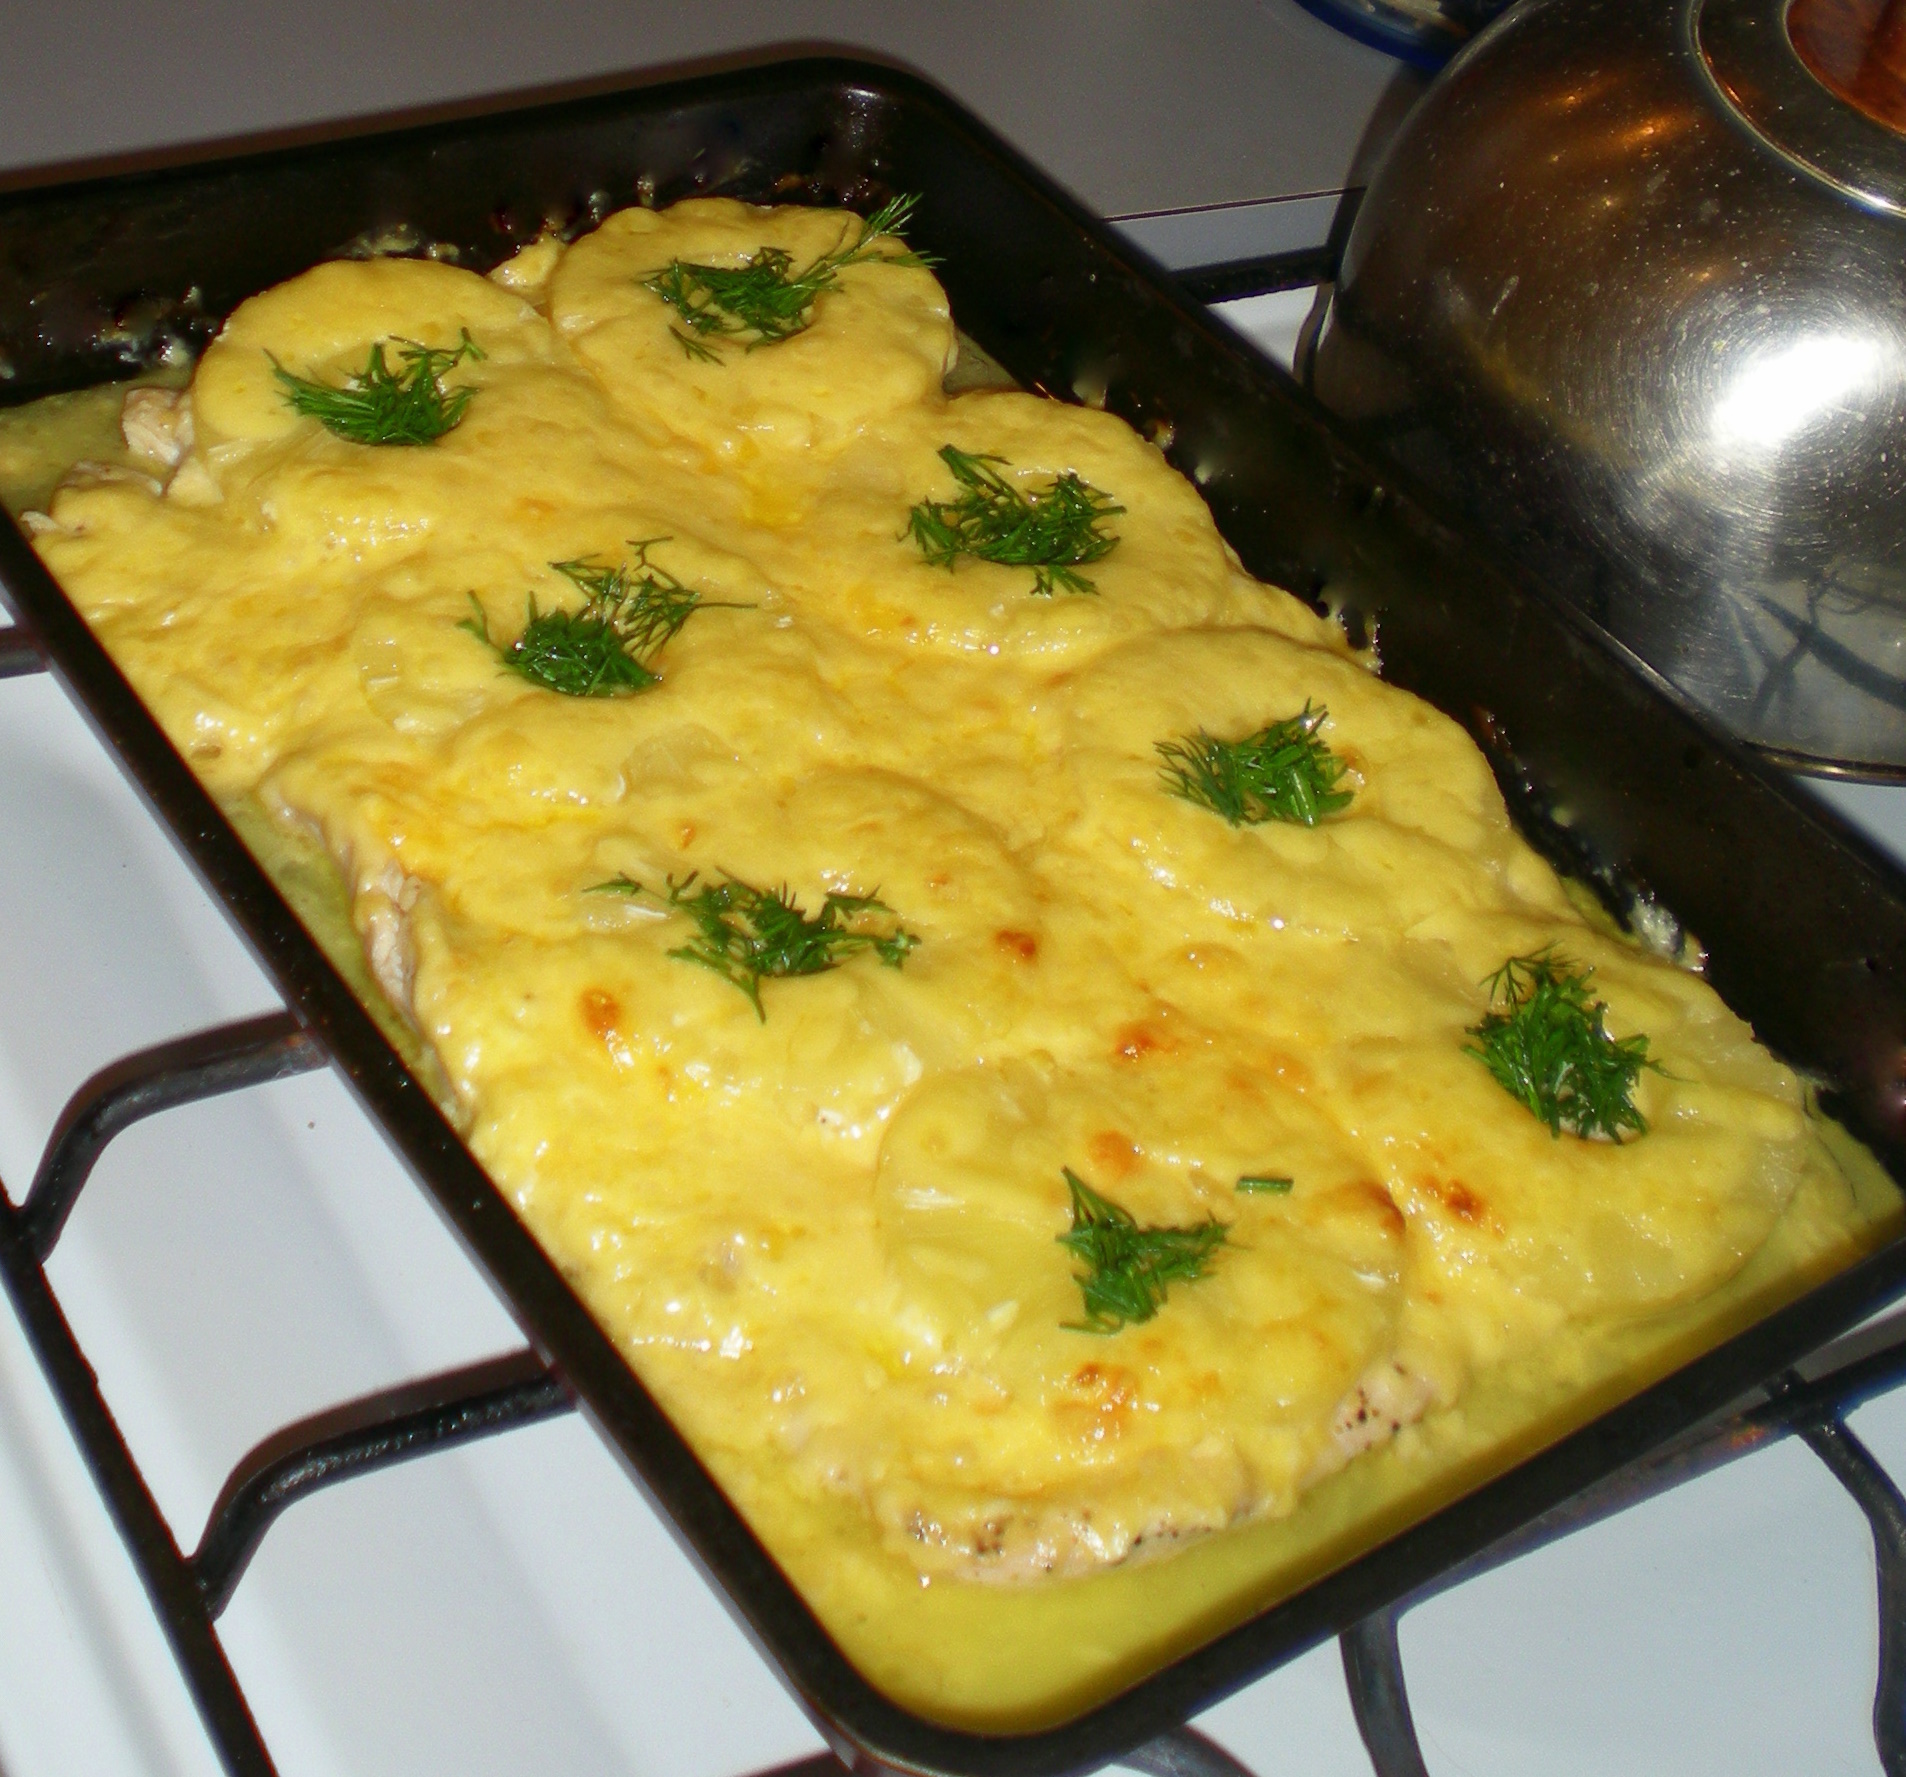 Курица с ананасами в духовке под сыром рецепт с фото